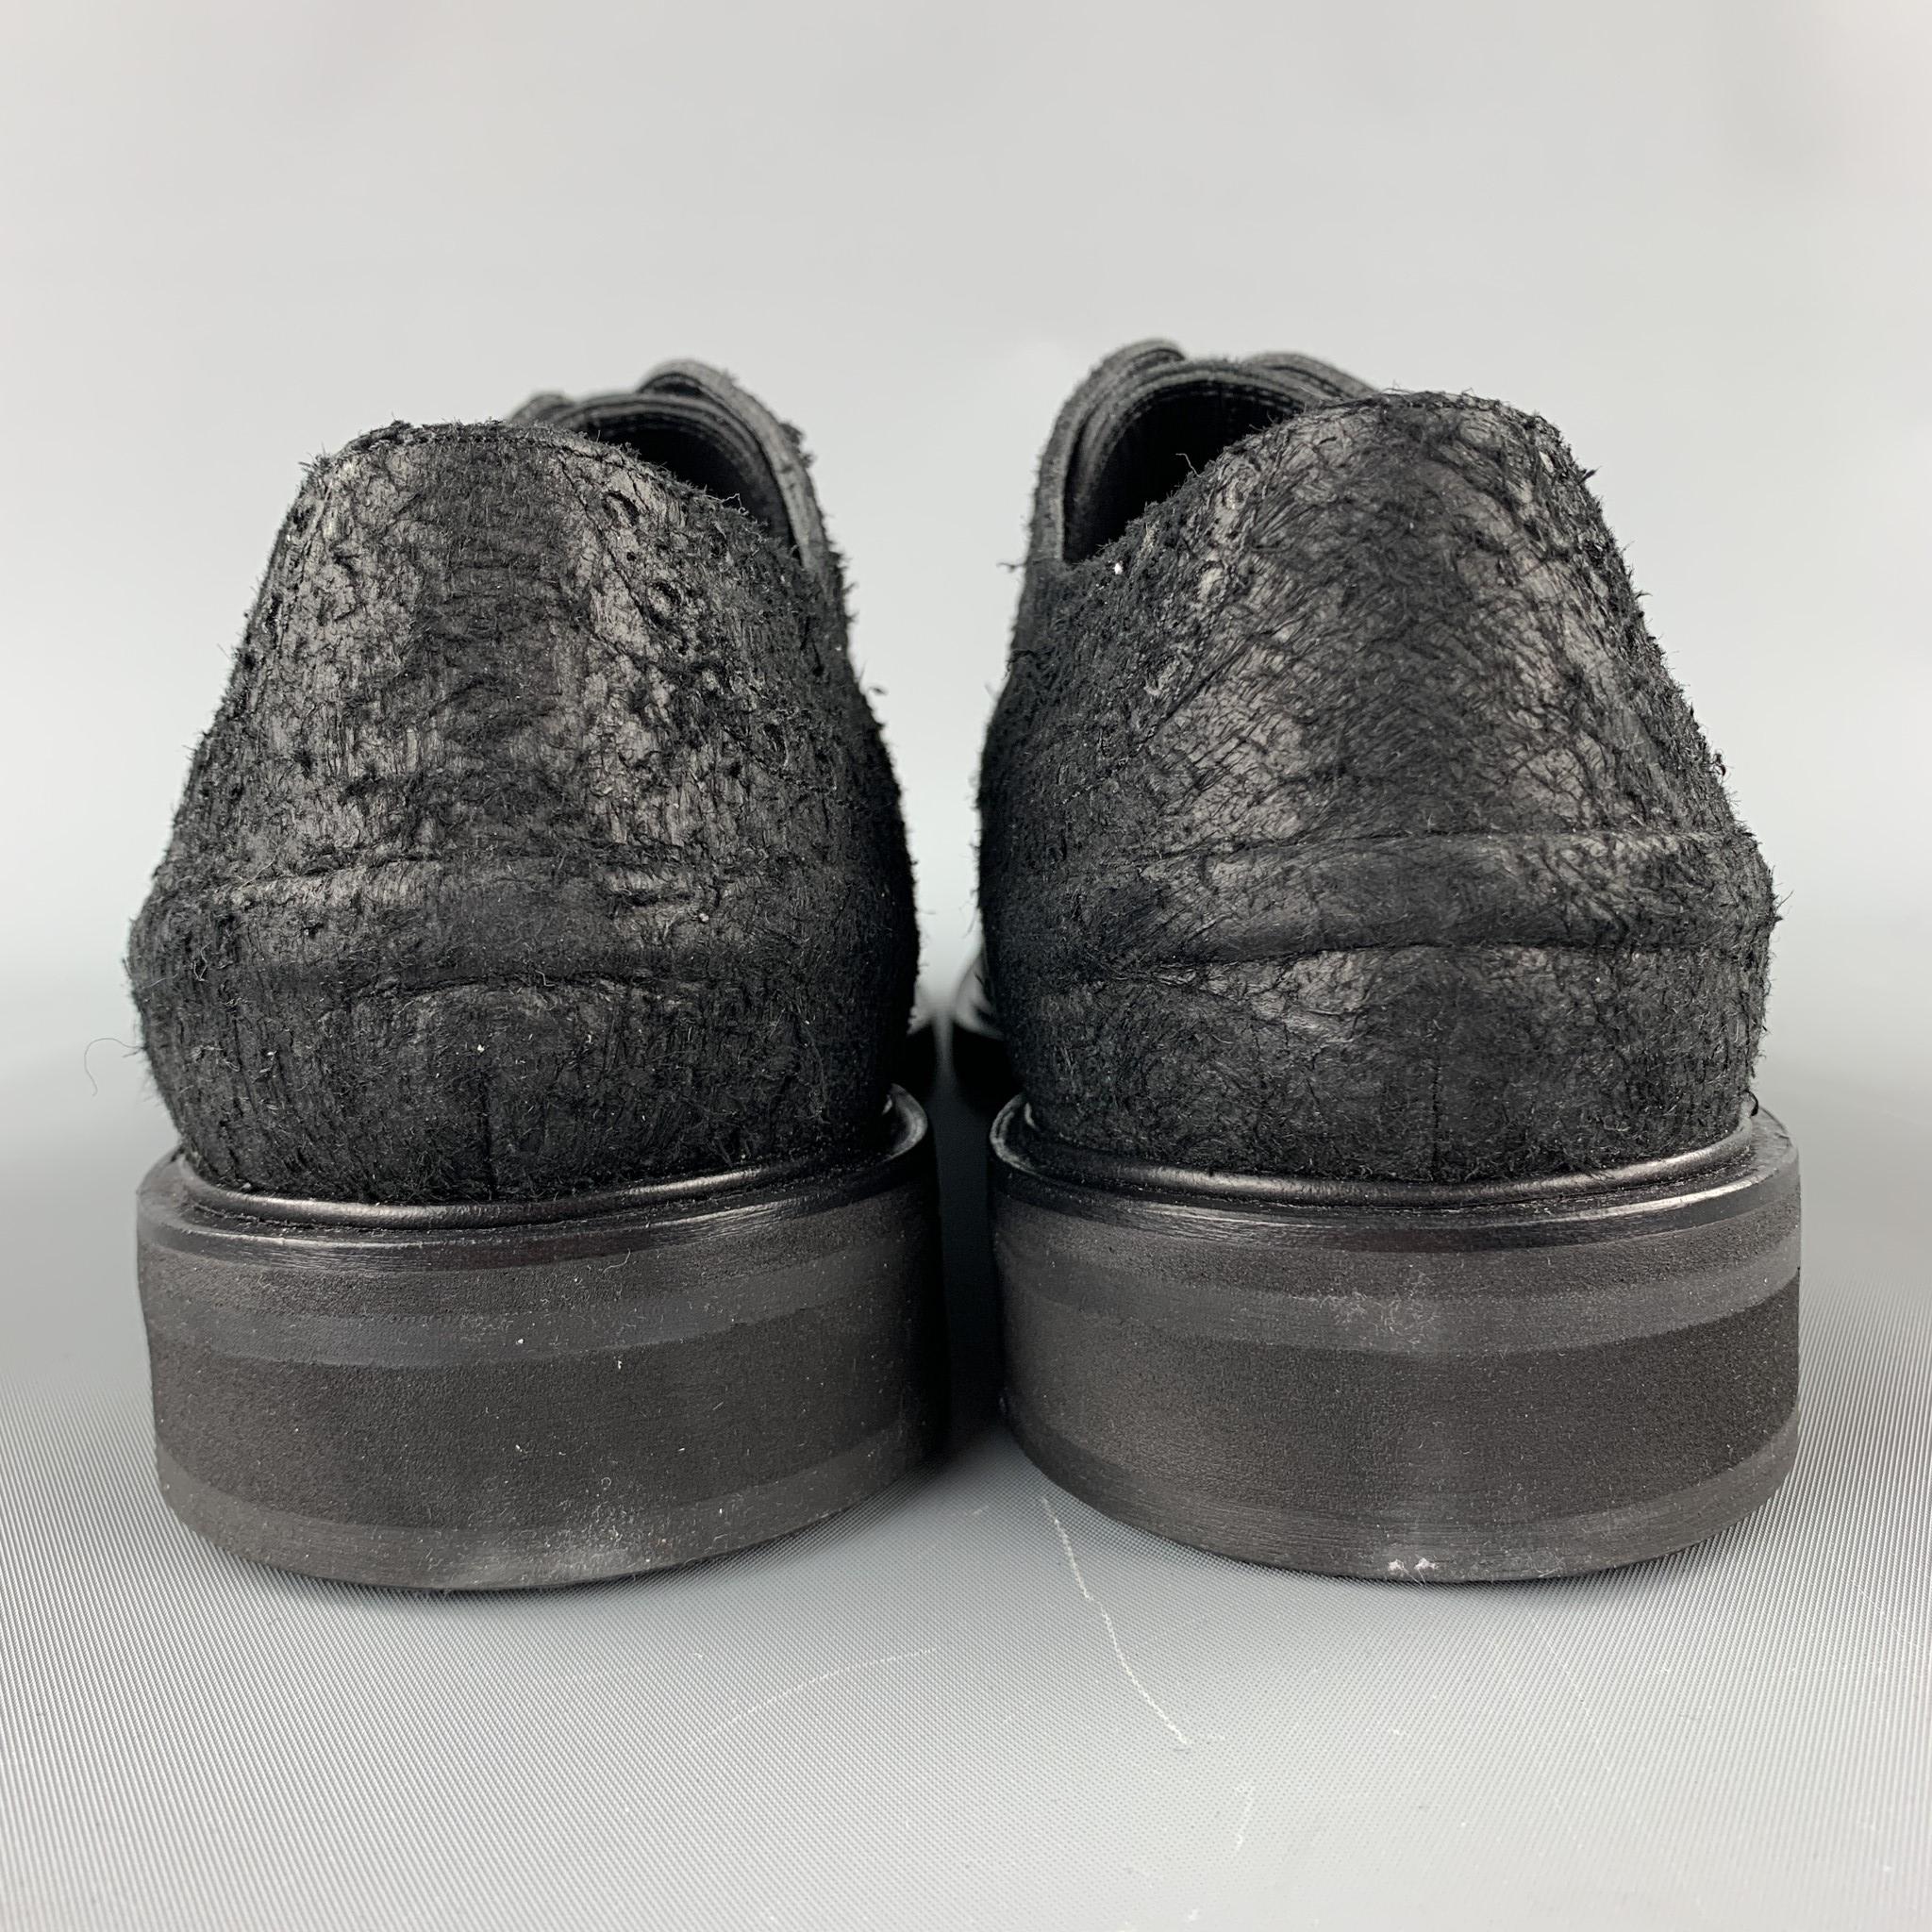 NEIL BARRETT Men's Size 10 Black Textured Suede Cap Toe Lace Up Shoes - NEW 2